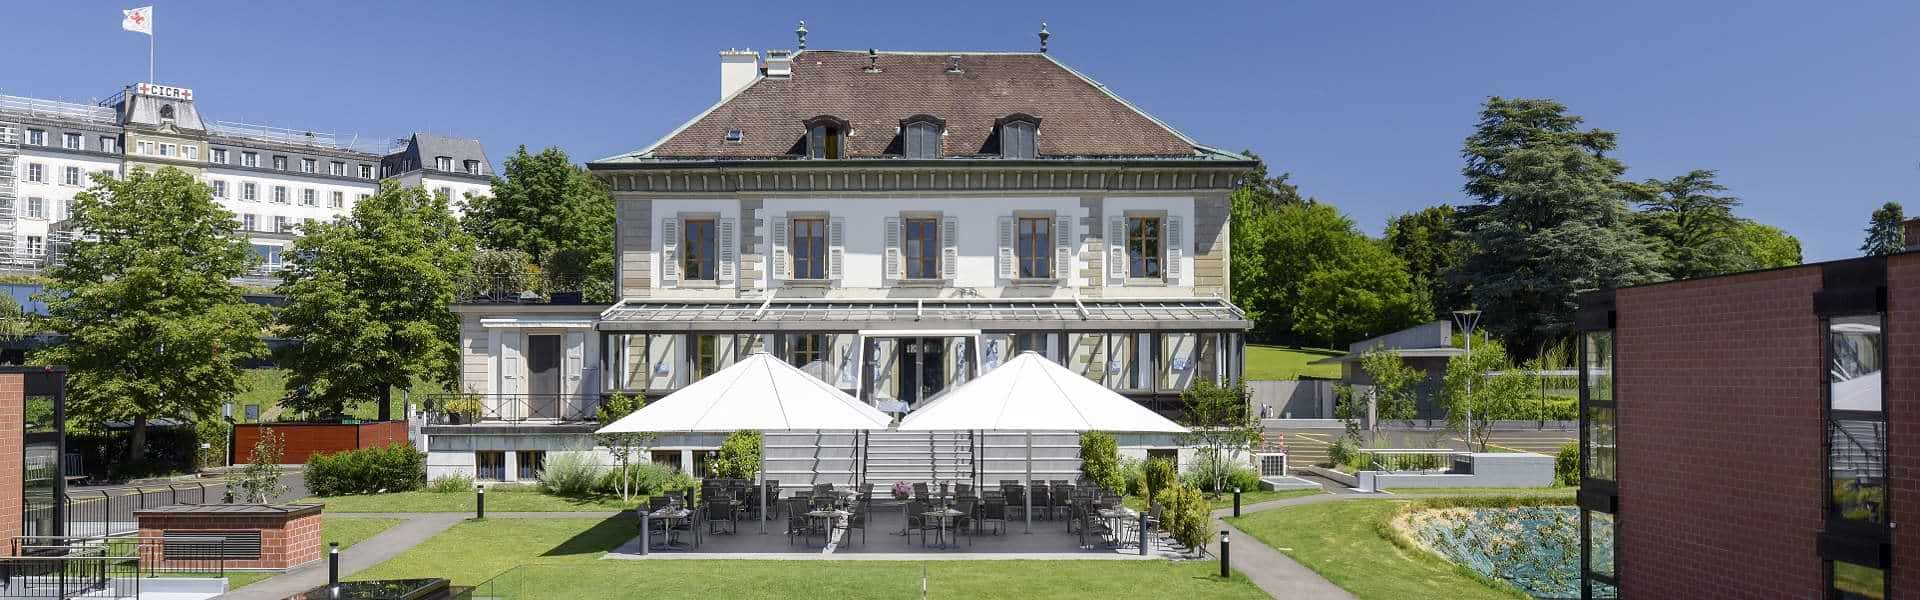 Banner - Ecole Hôtelière de Genève, au bord du lac léman en Suisse 1920x600 final